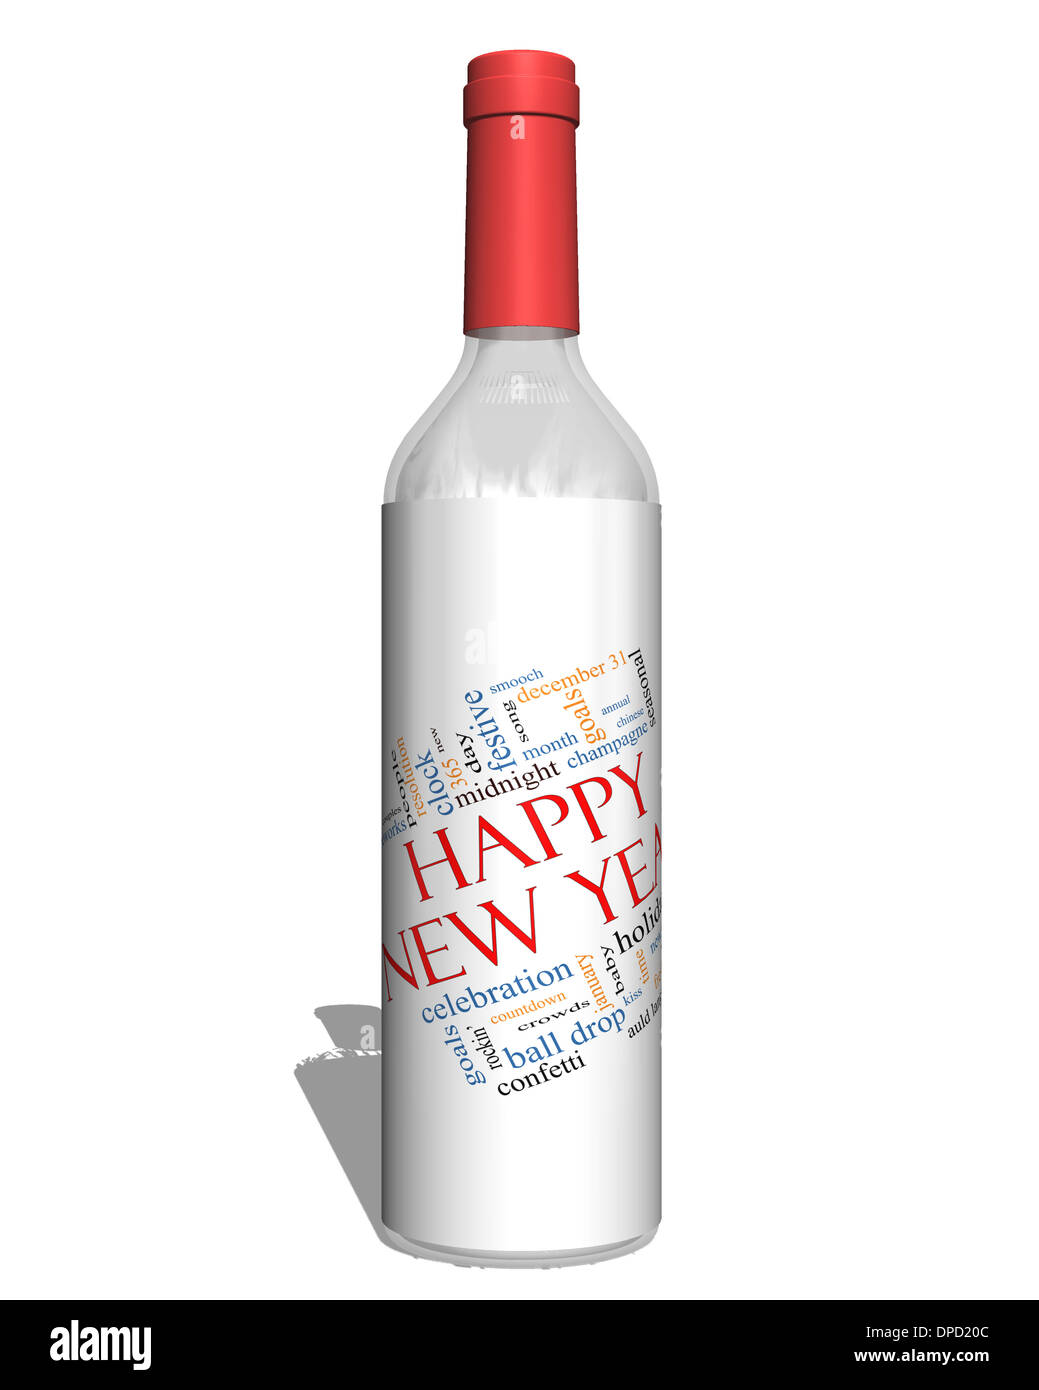 Bonne année sur une bouteille mot Concept Cloud avec beaucoup de termes comme célébration, maison de vacances, compte à rebours, baiser et plus encore. Banque D'Images